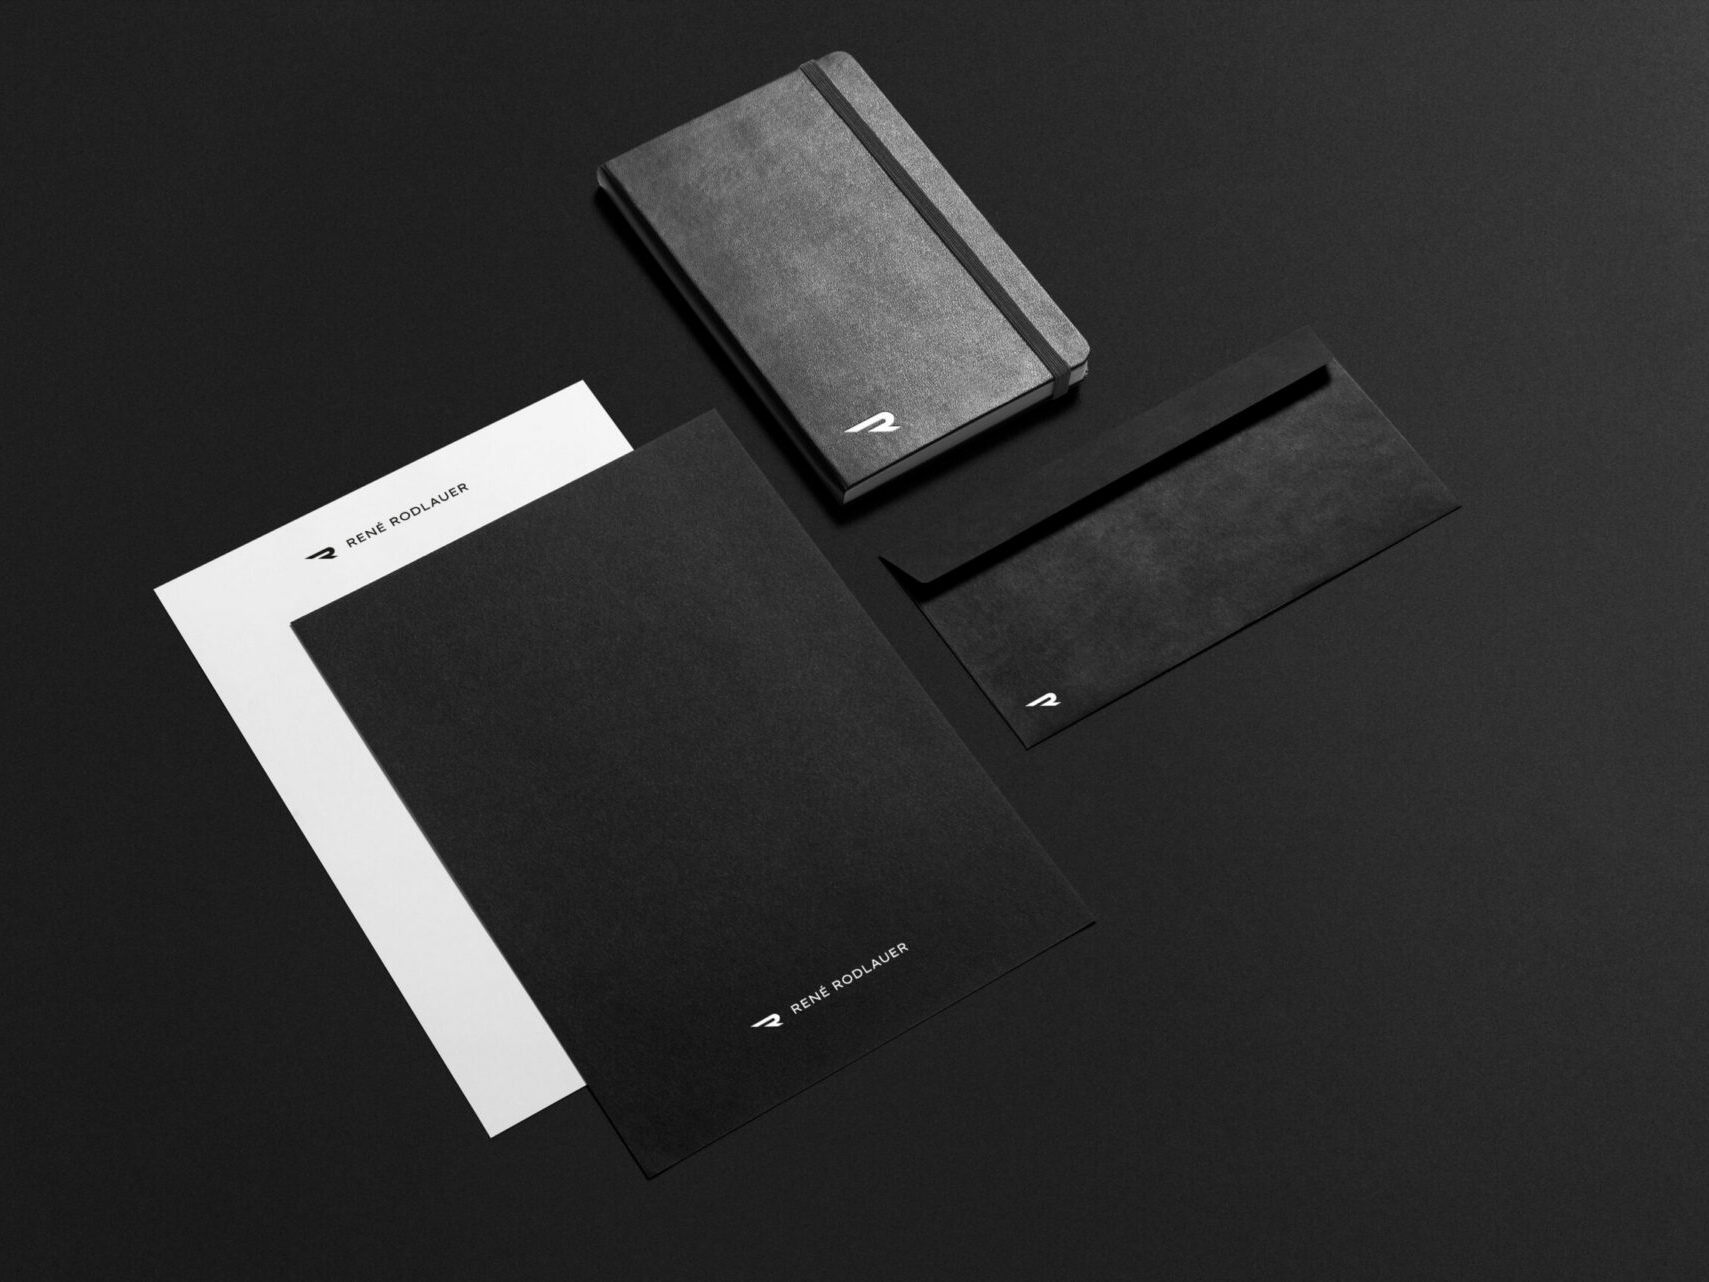 Briefpapier, Notizbuch und Briefumschlag mit Icon sowie Logo von René Rodlauer auf schwarzem Hintergrund.